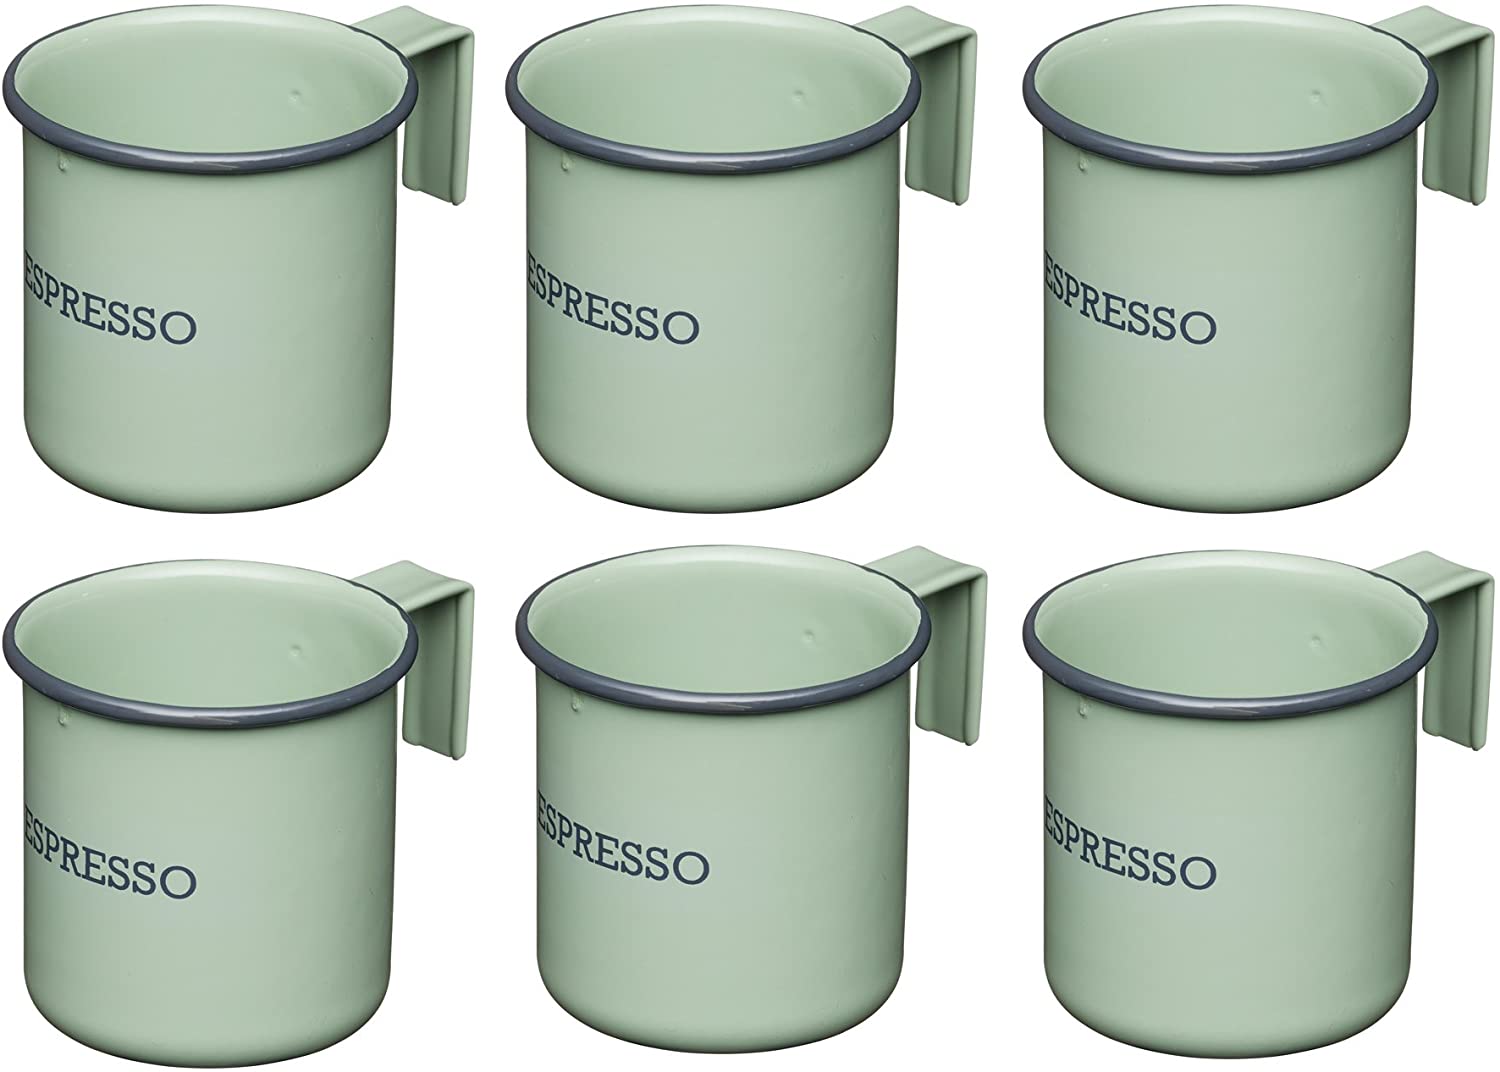 KitchenCraft Living Nostalgia Enamel Espresso Coffee Cups, 75 ml, Set of 6, Green